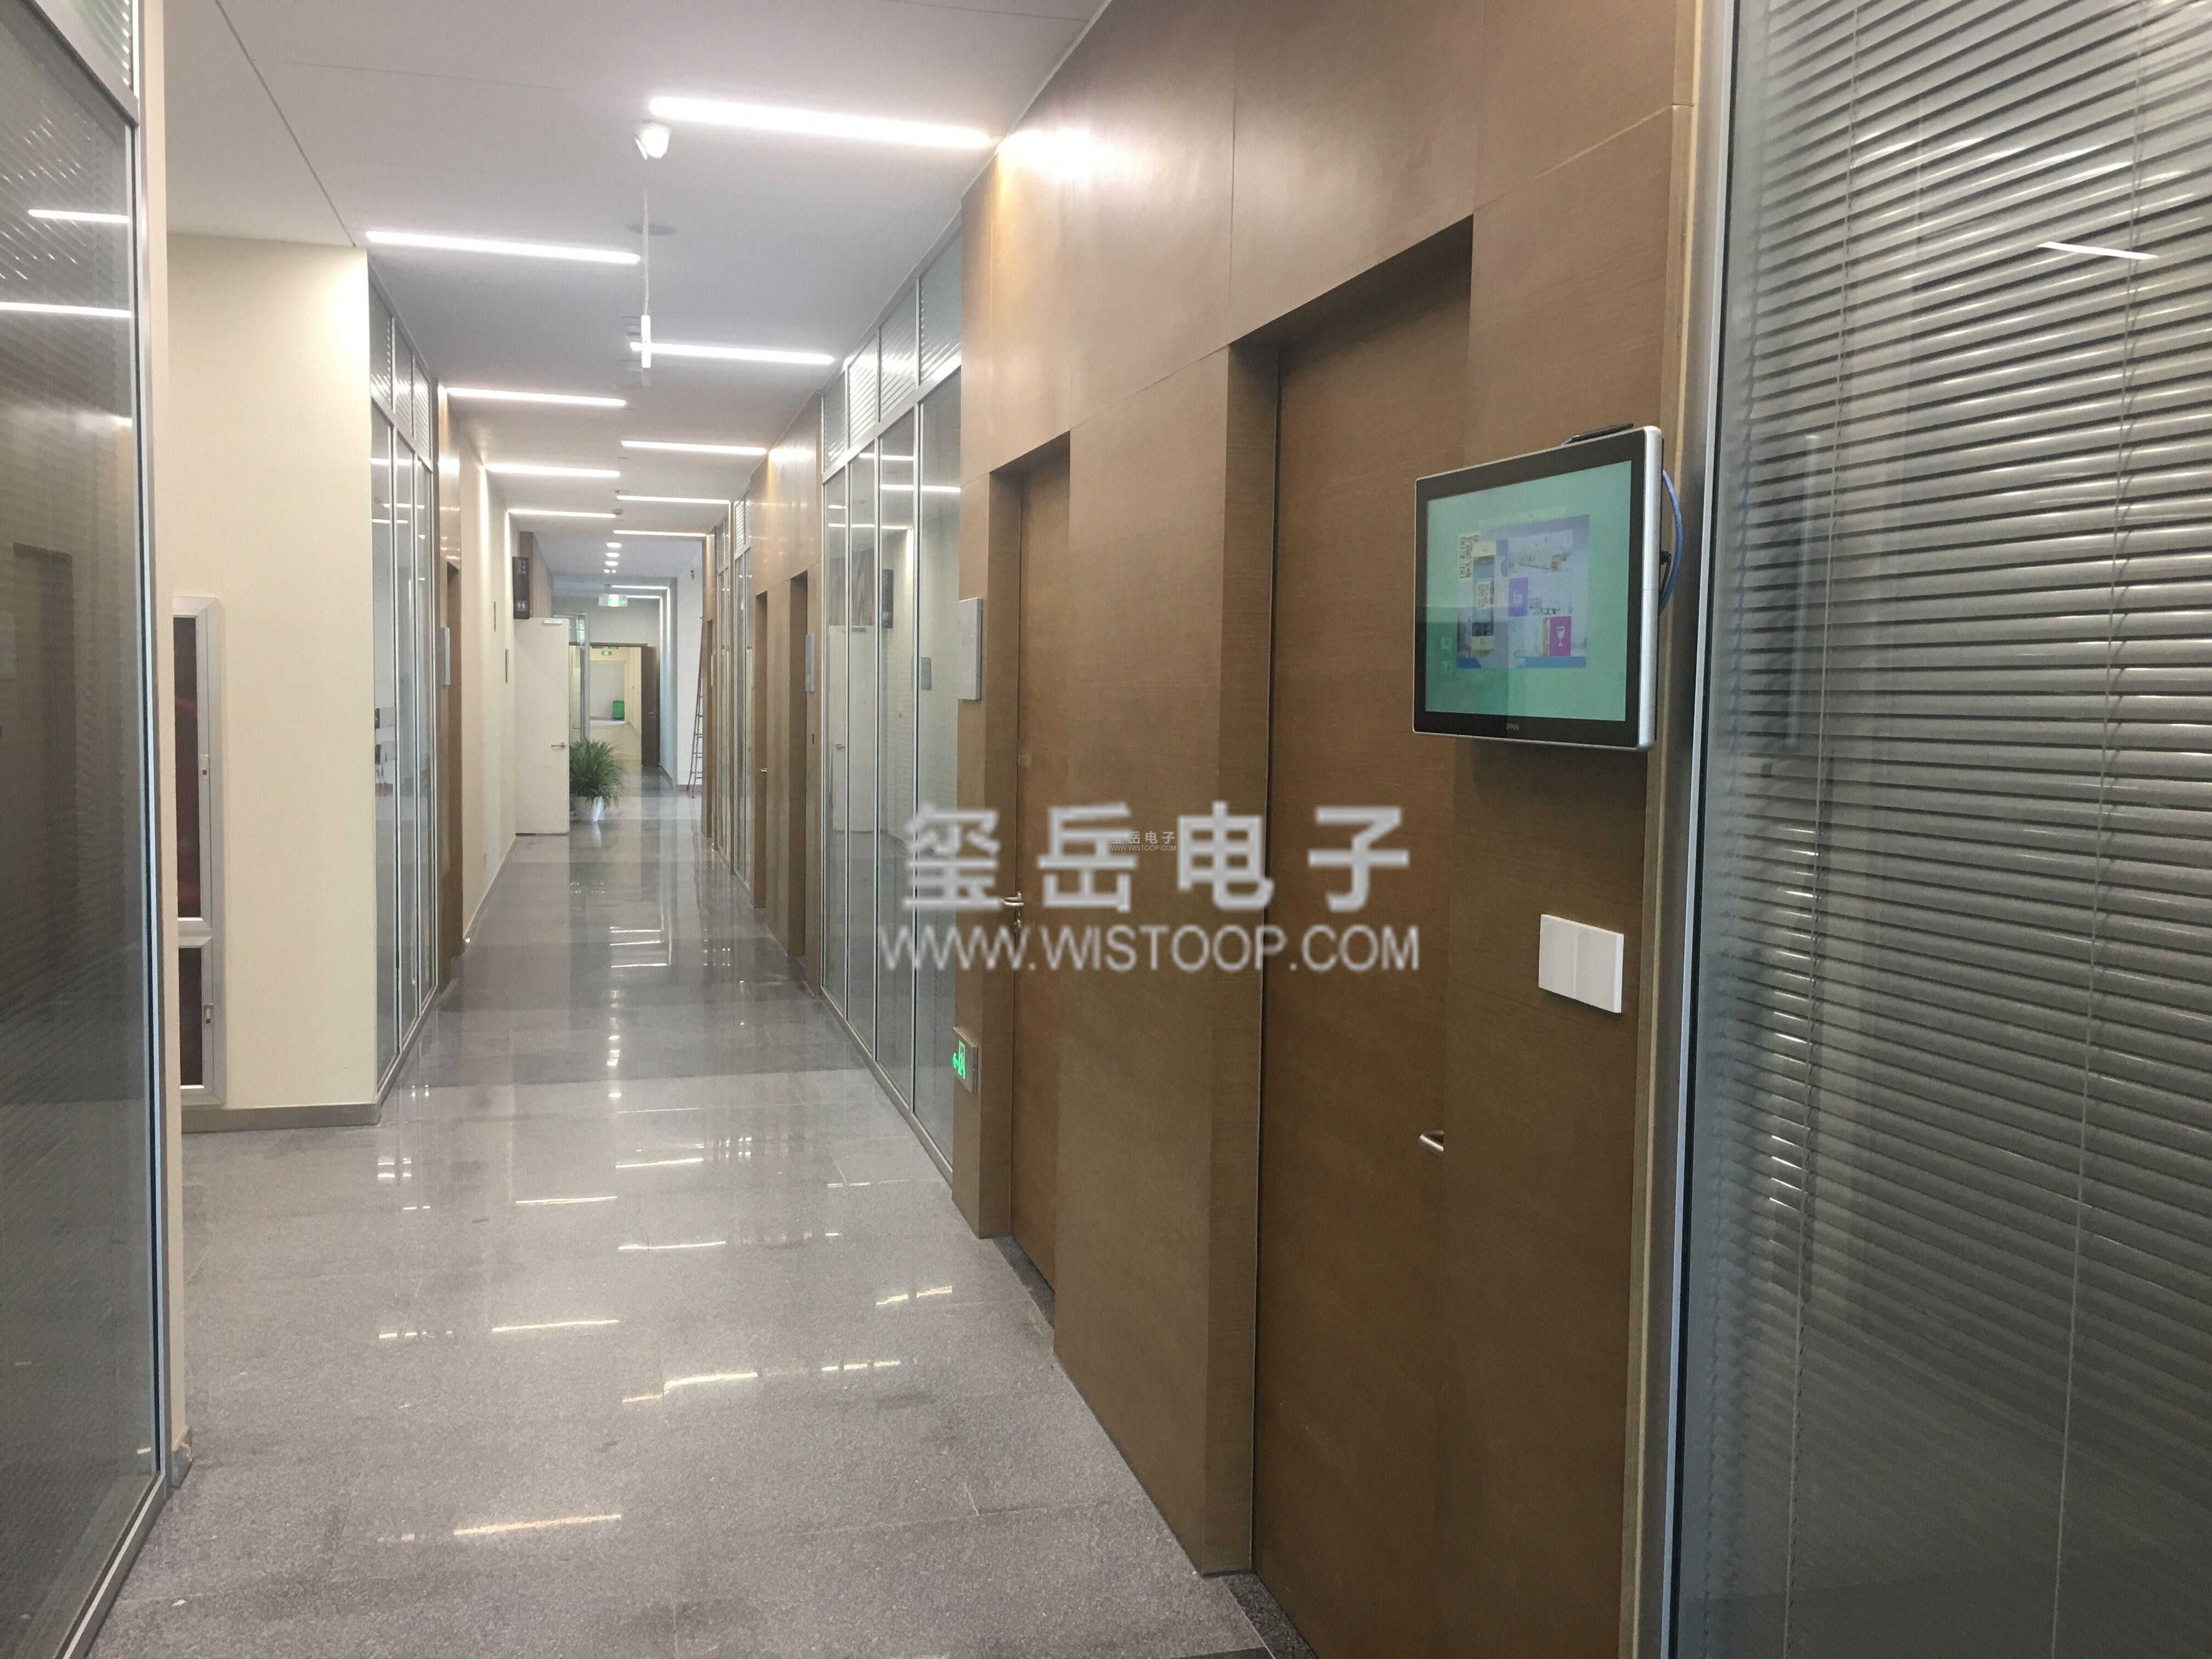 中国移动杭州研发中心会议预约与信发系统案例